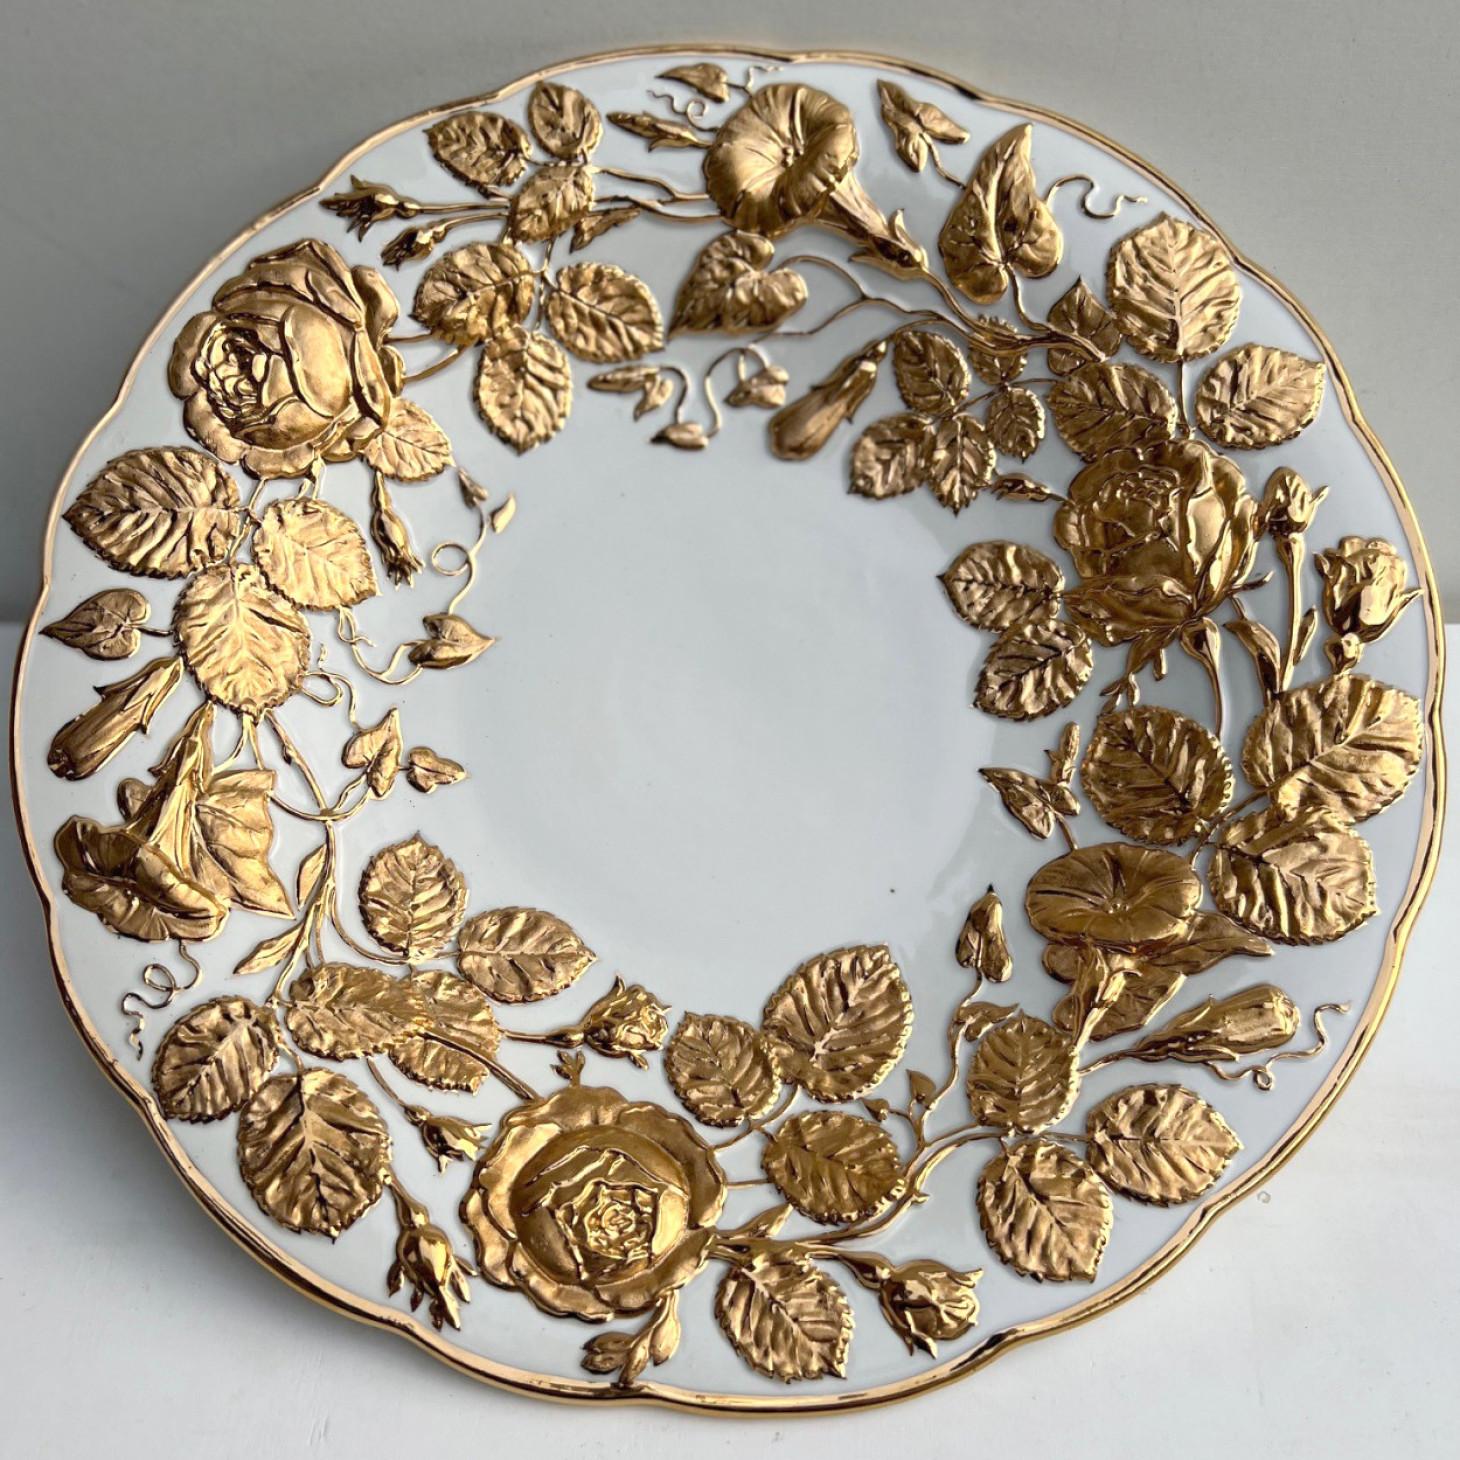 Porzellanteller mit reichem Golddekor, hergestellt von Meissener Porzellan, Deutschland, um 1950.

Sie war die erste Porzellanfabrik in Europa, die echtes Porzellan außerhalb Asiens herstellte.

Die Platte ist in ausgezeichnetem Zustand. Die